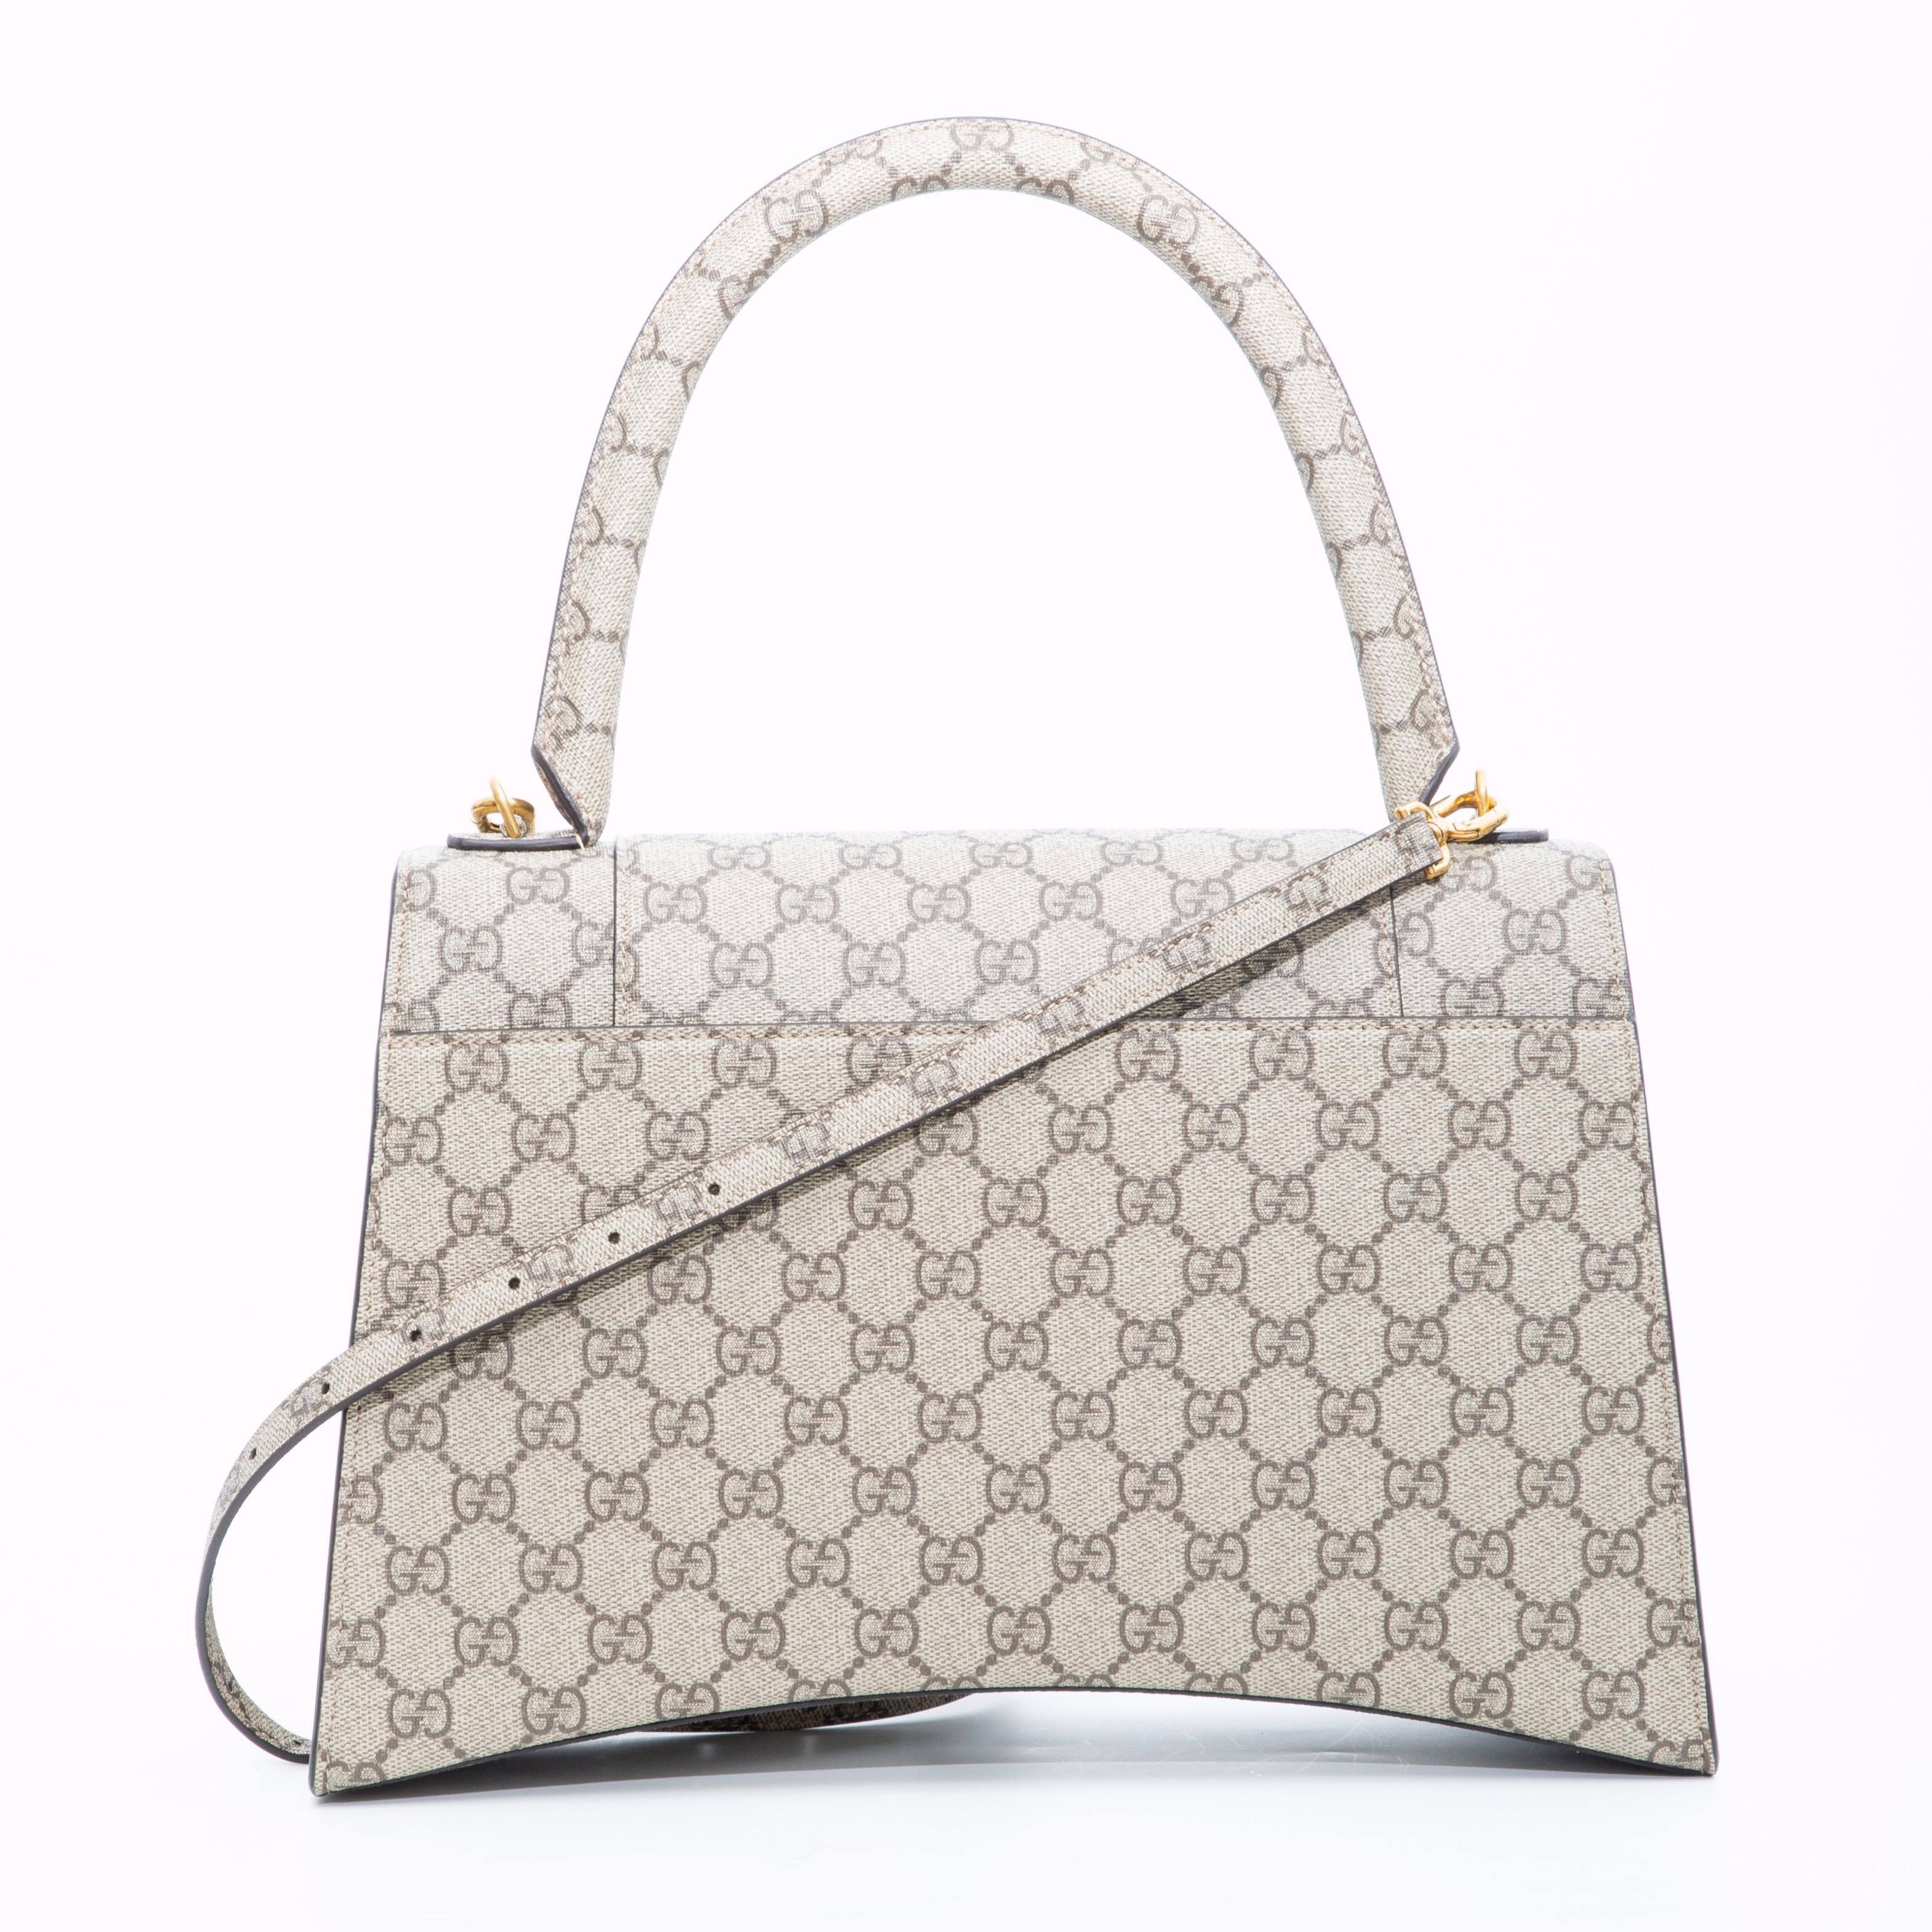 Gucci Balenciaga Bag - 8 For Sale on 1stDibs